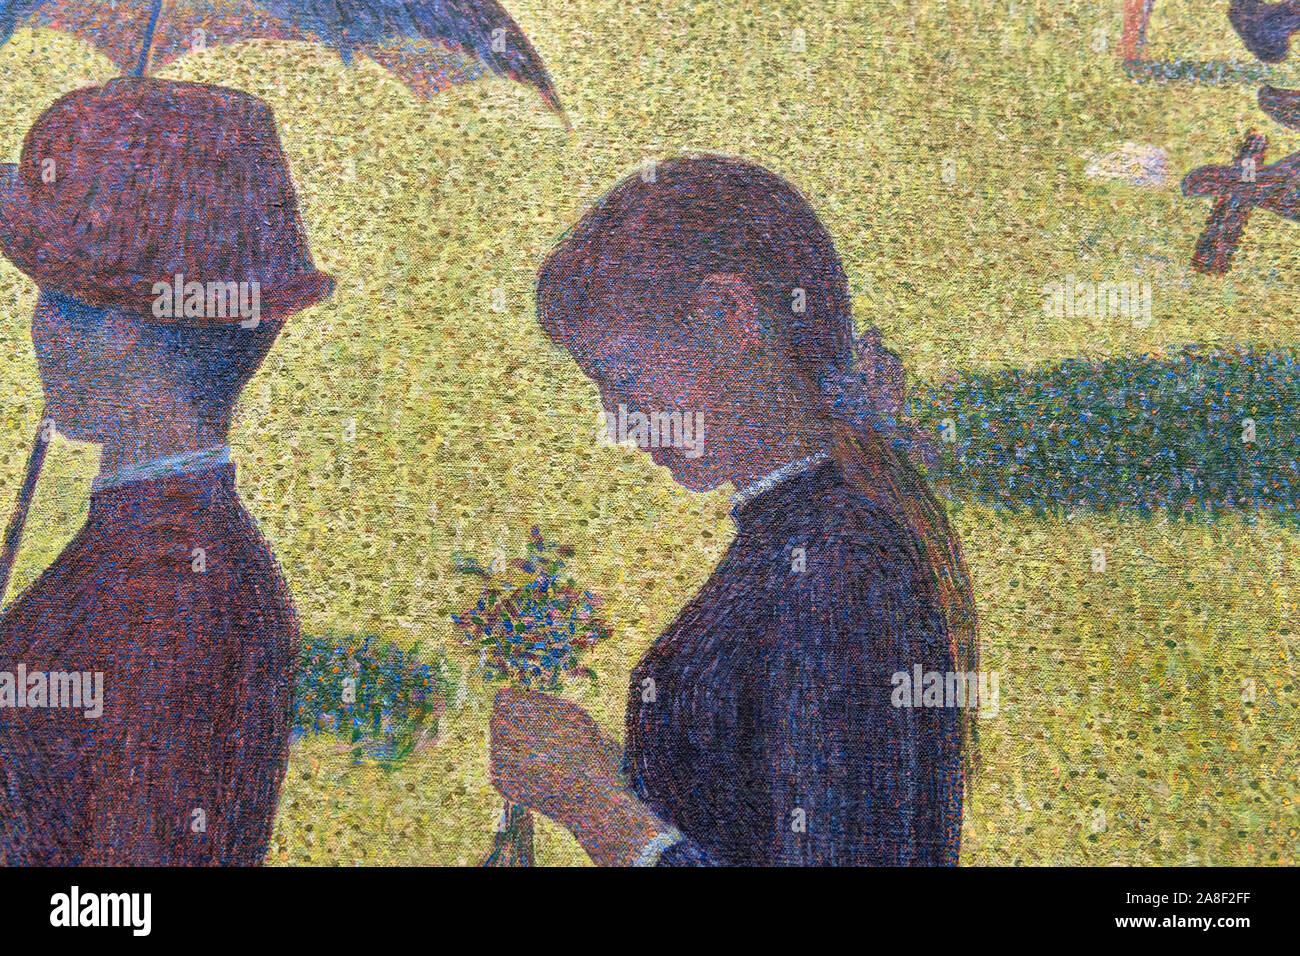 Détail de la peinture 'Un dimanche à la Grande Jatte' par Georges Seurat montrant la technique pointilliste. Banque D'Images